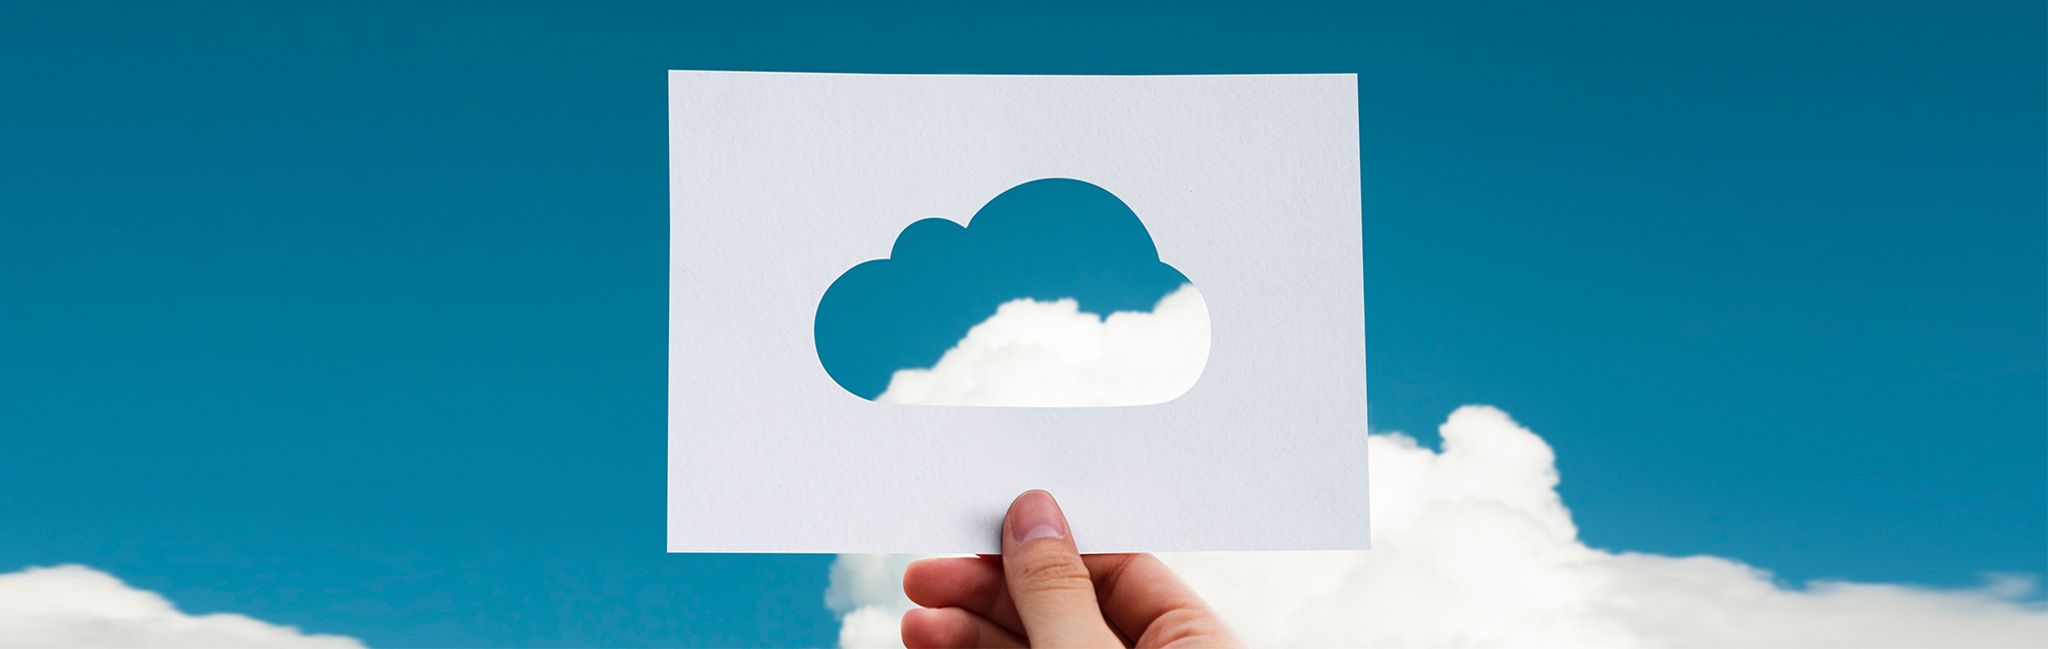 Google Cloud SERHS Serveis Partner